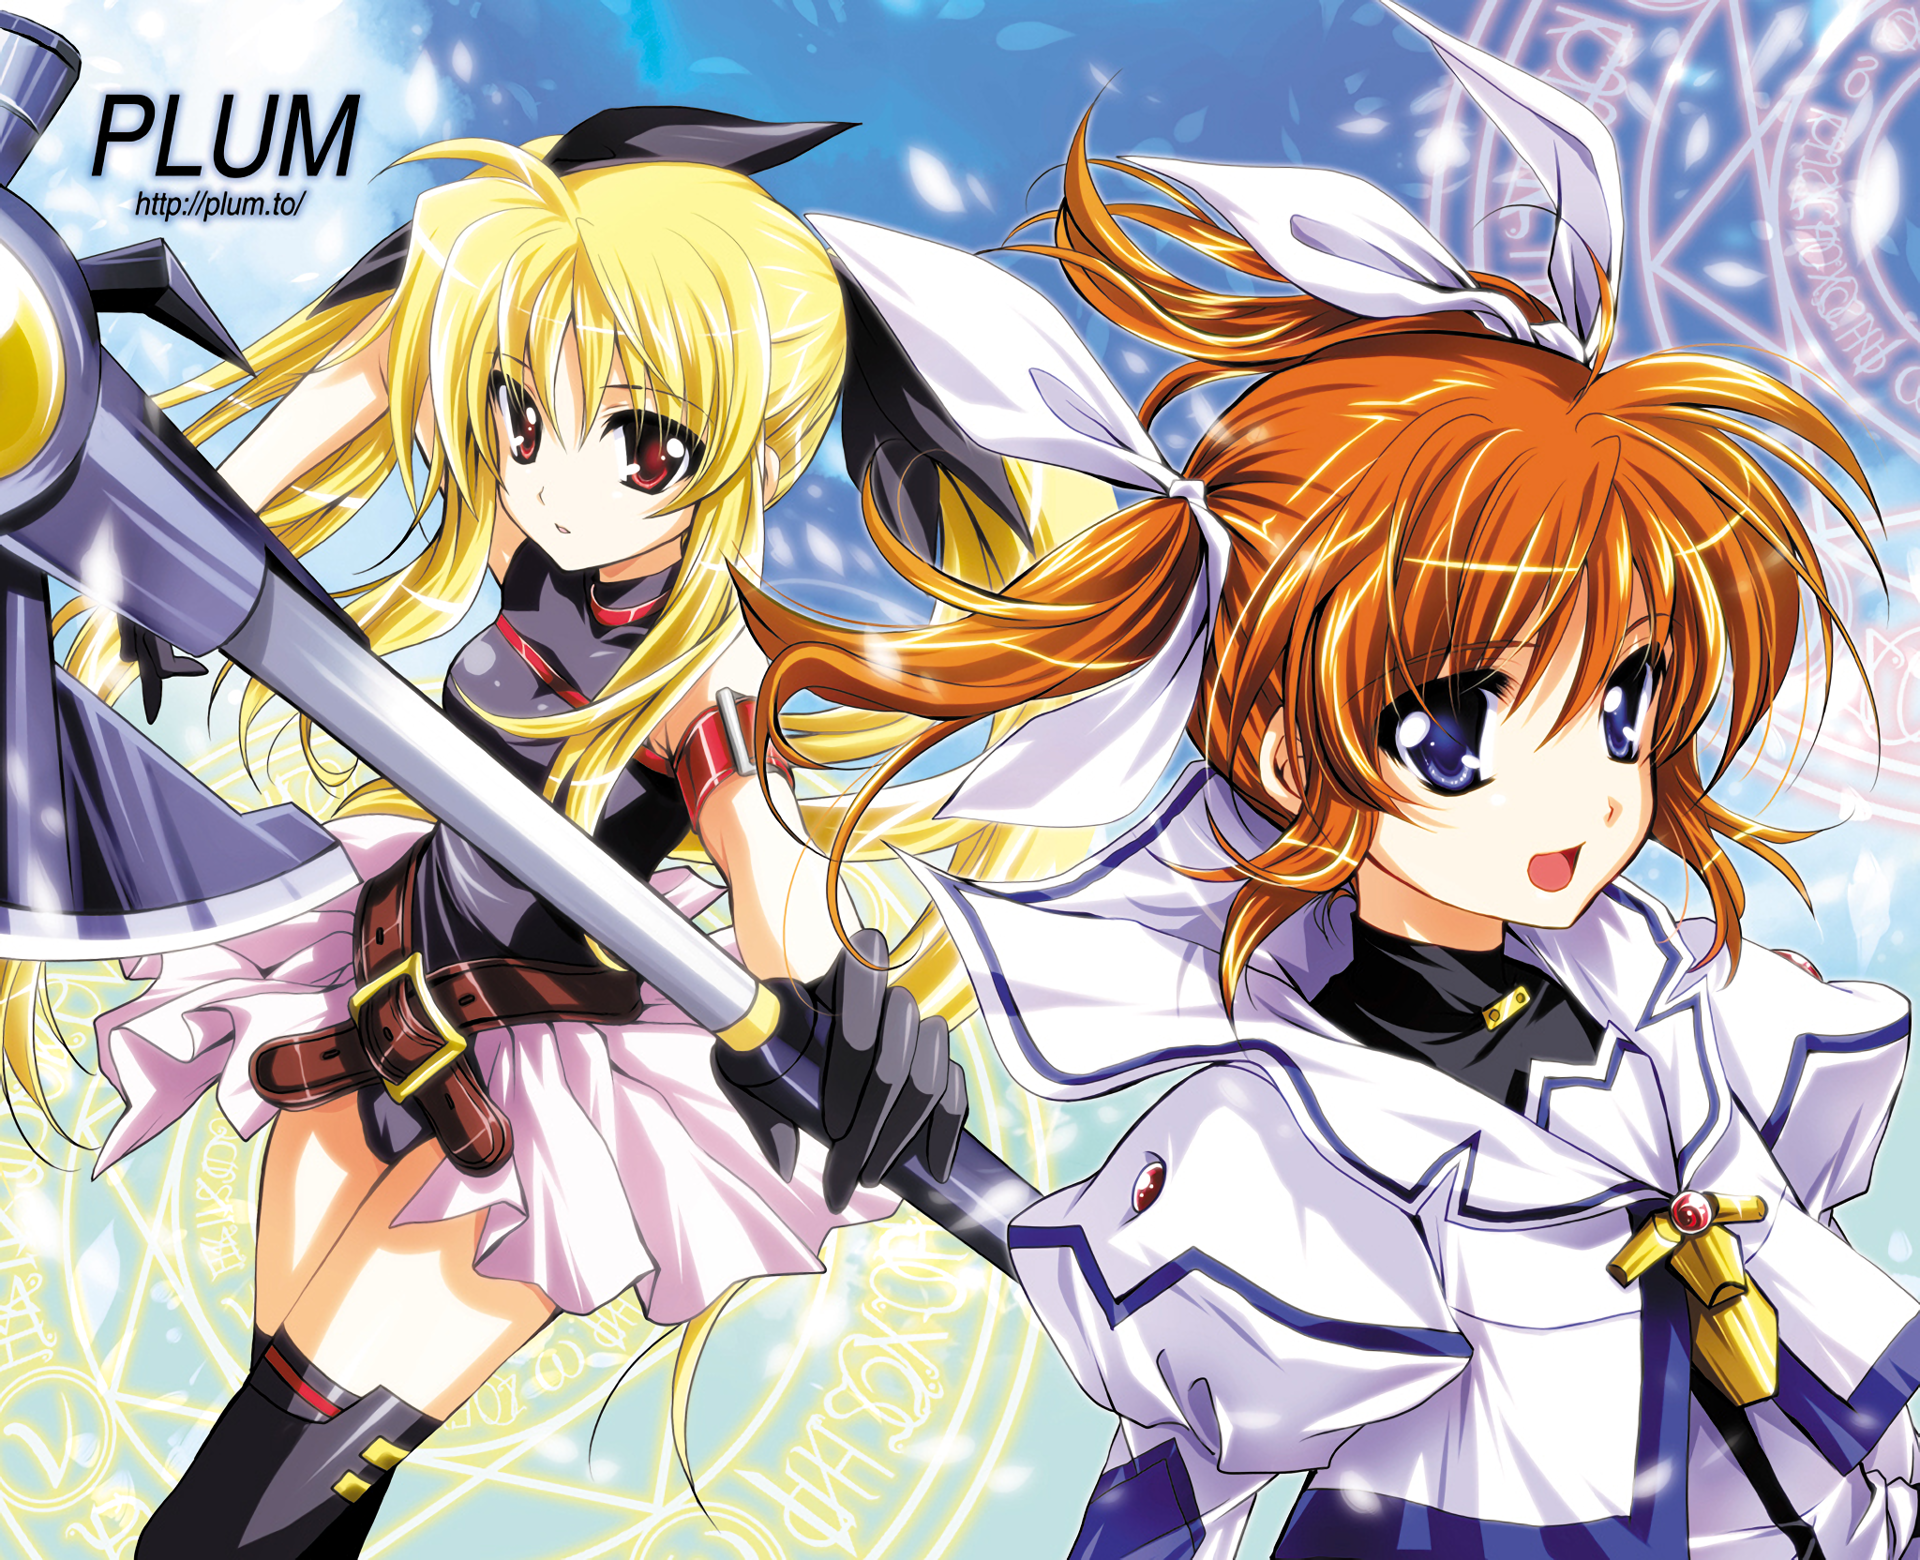 Anime Magical Girl Lyrical Nanoha HD Wallpaper | Background Image